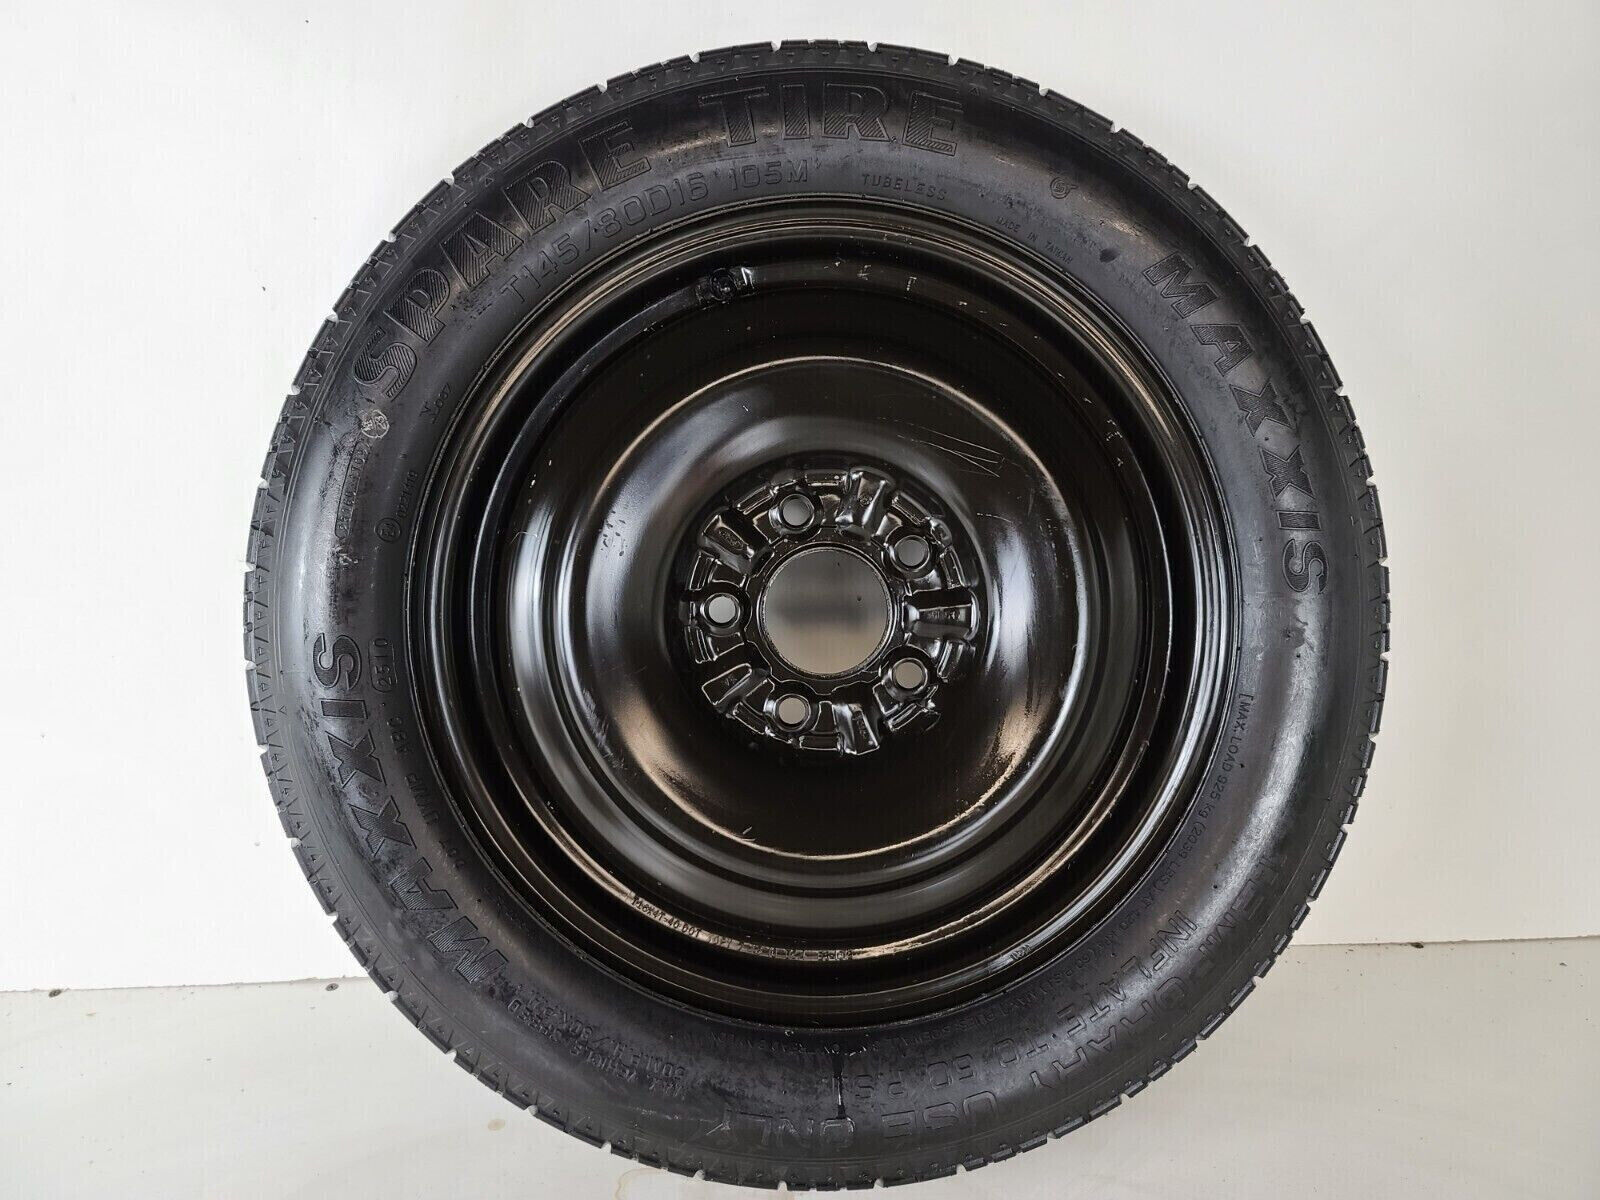 2010-2012 Lincoln Mkz Compact Spare Tire Wheel Donut Rim 16''